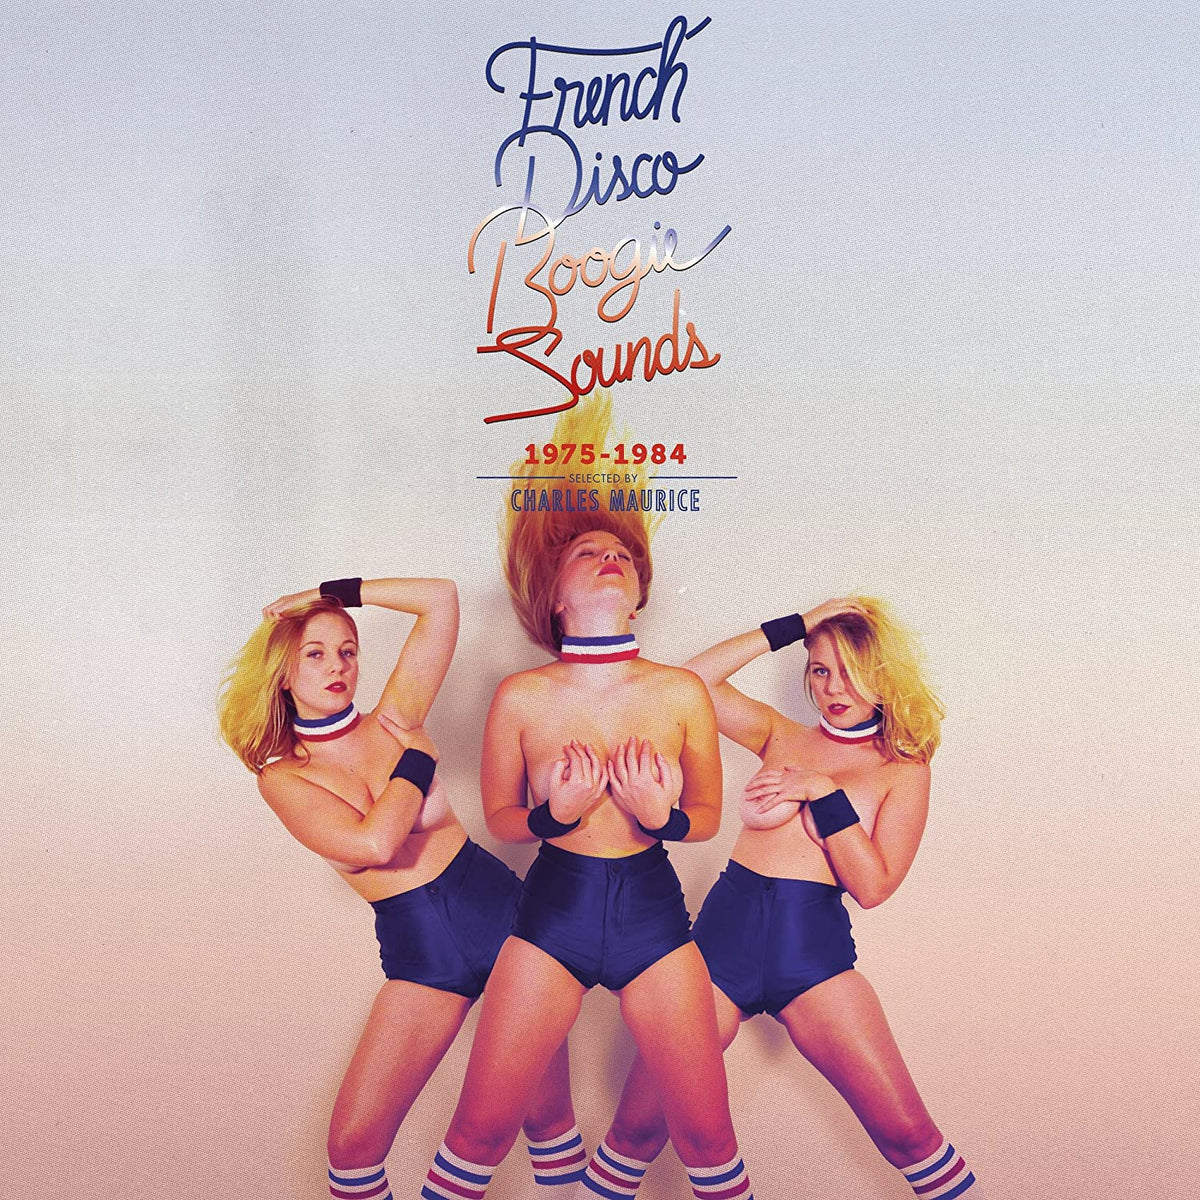 V/A - French Disco Boogie Sounds 1975-1984 2LP (EU Pressing, Gatefold)